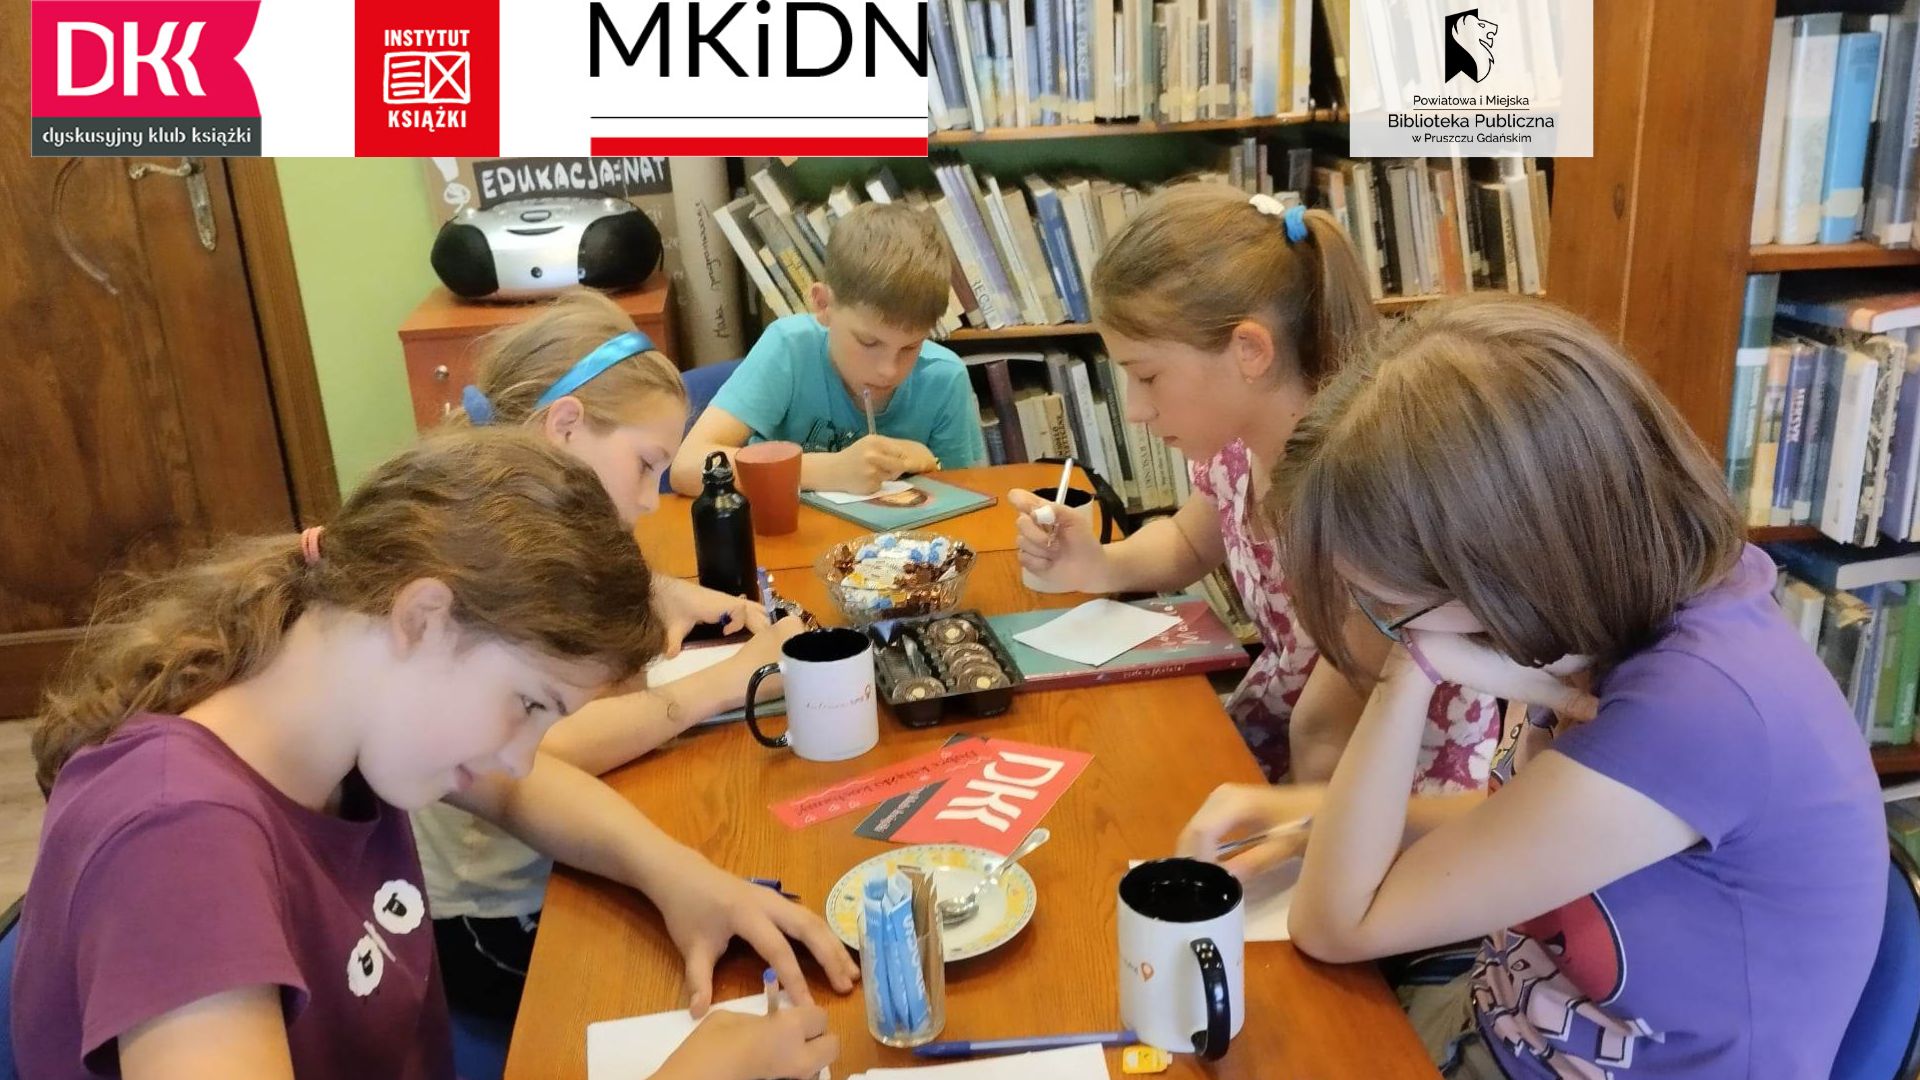 Przy stole siedzi młodzież. Przed sobą maja kartki. Po środku stołu leży logo DKK.